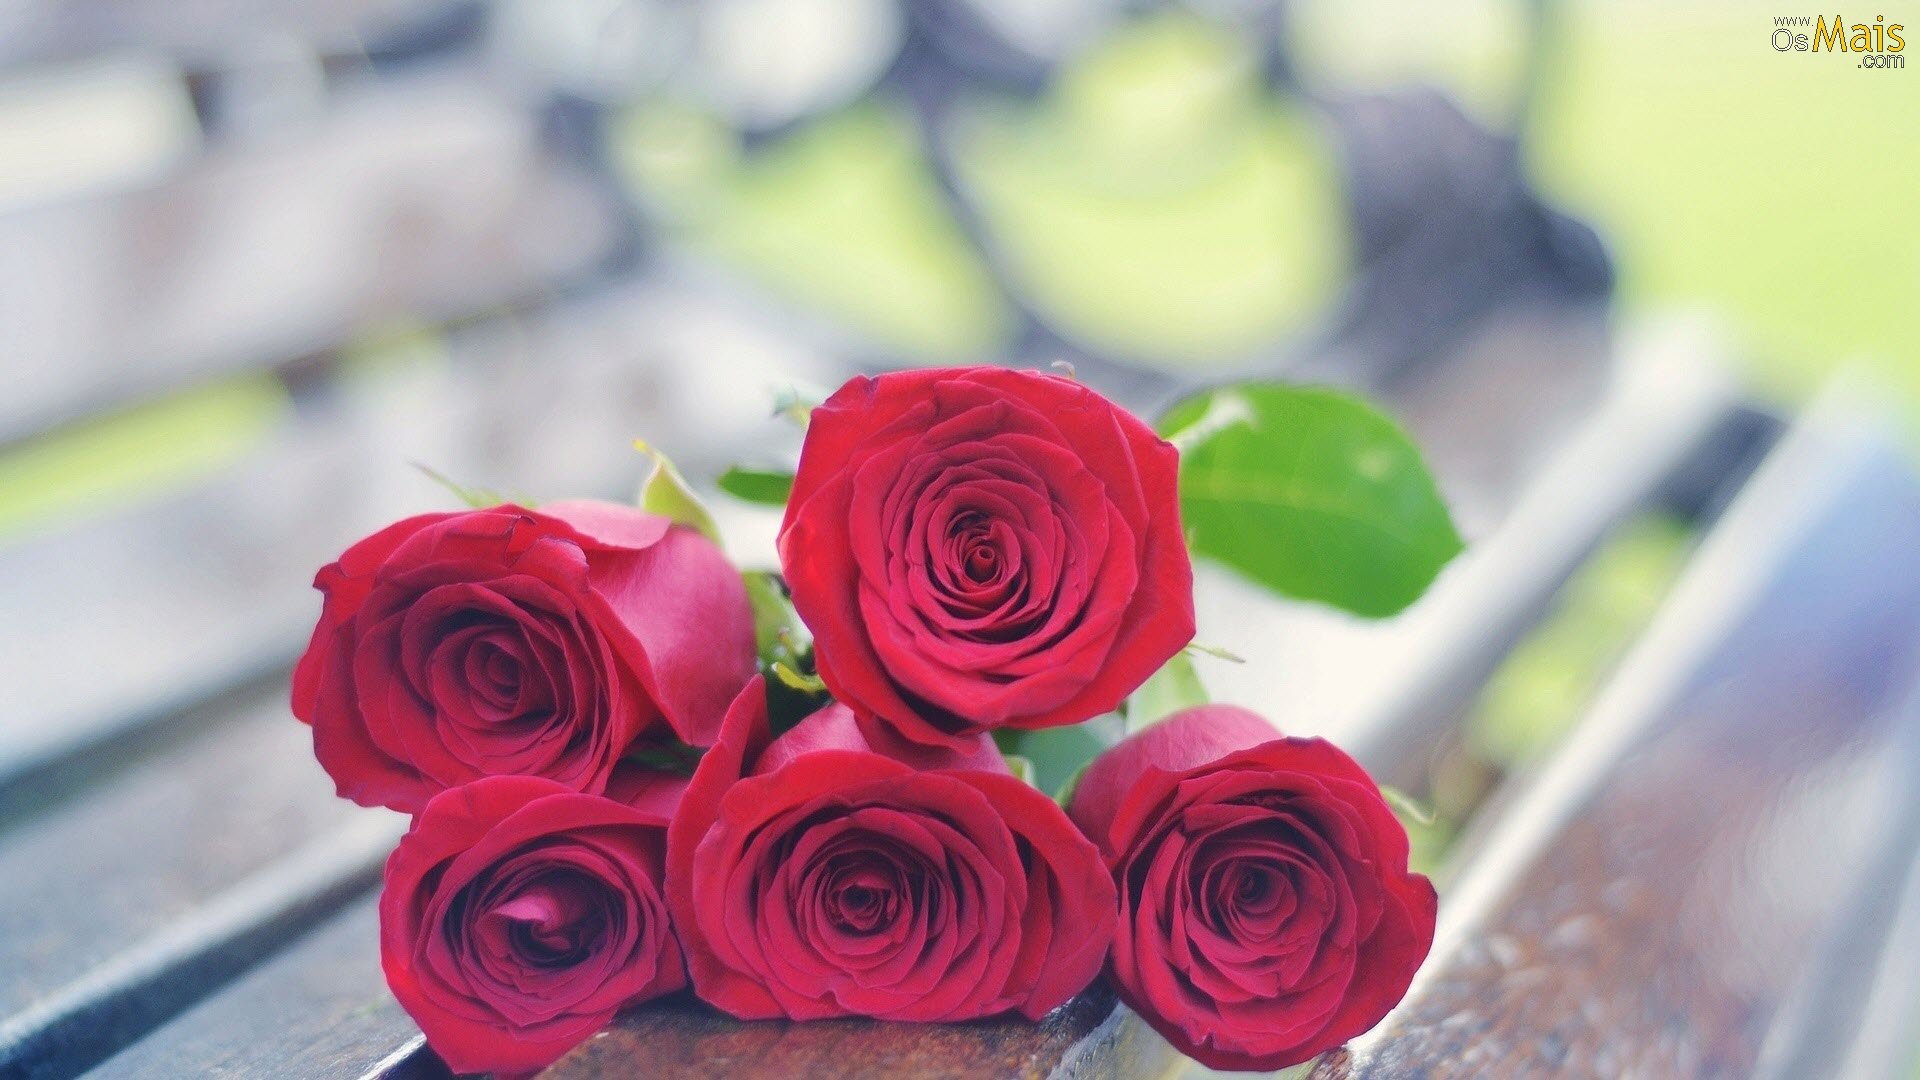 ロザスの壁紙,花,庭のバラ,ローズ,ピンク,赤